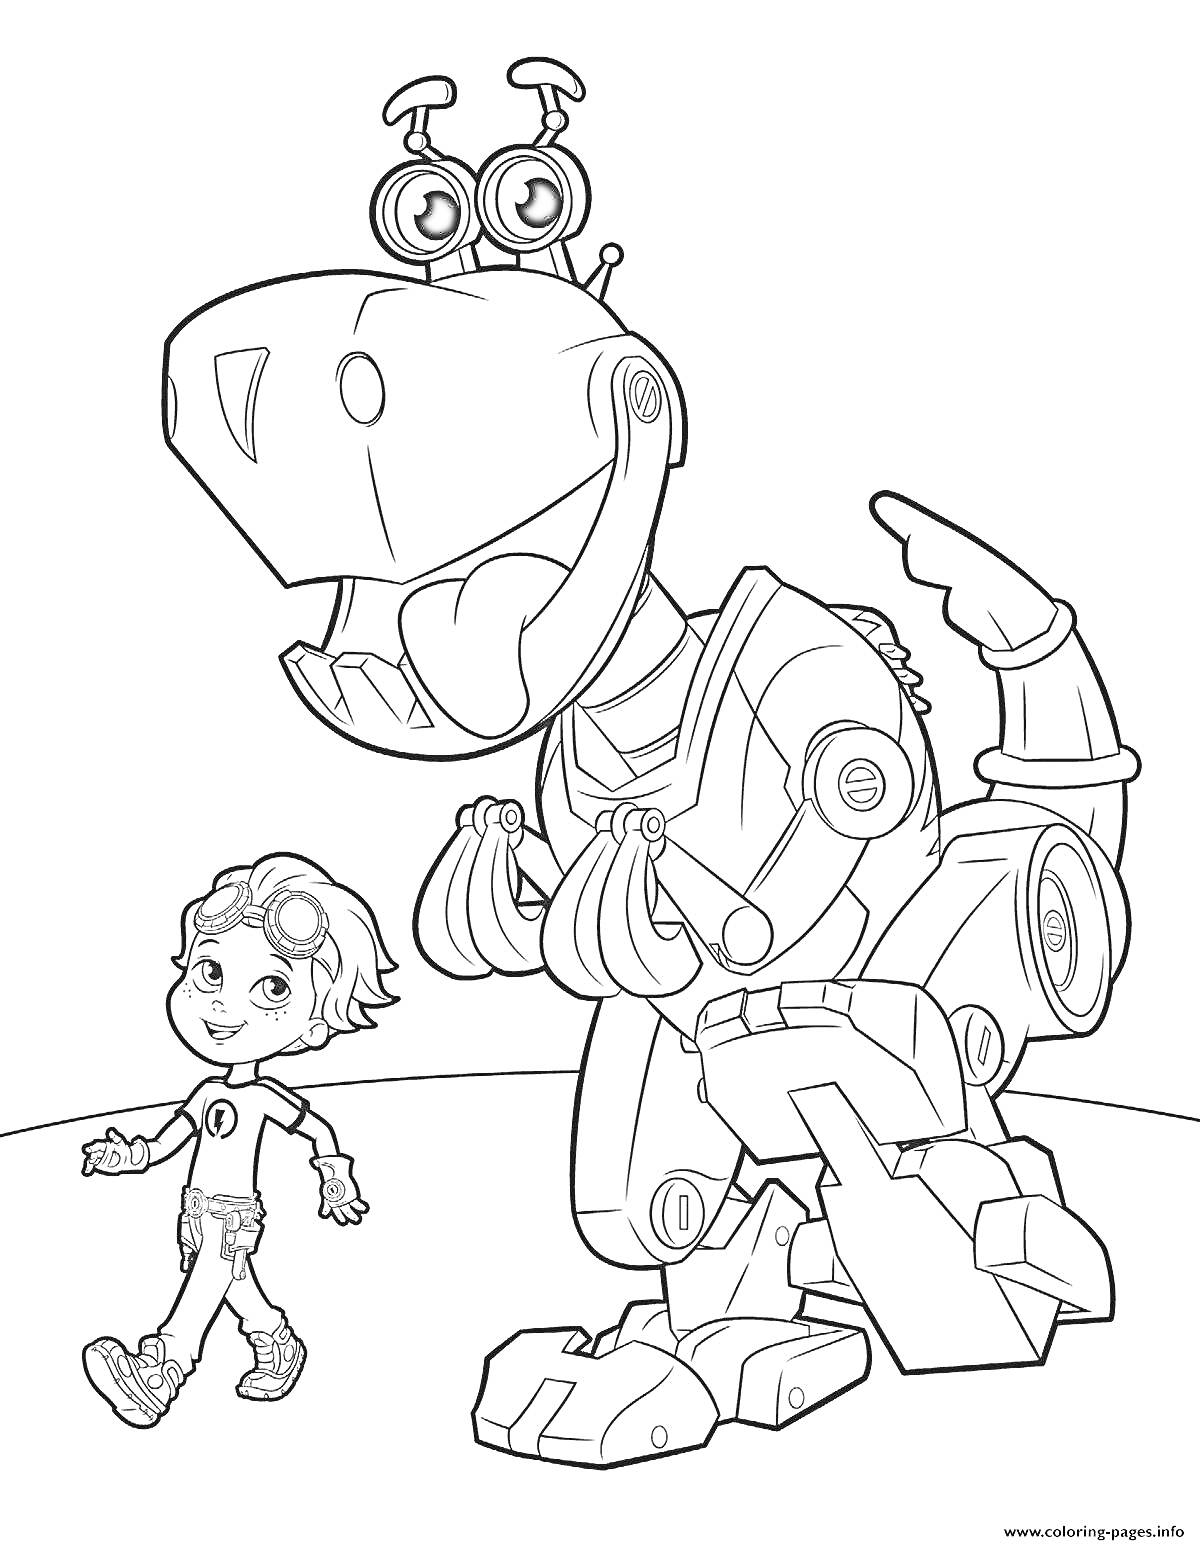 Раскраска Человек рядом с дружелюбным роботом-динозавром